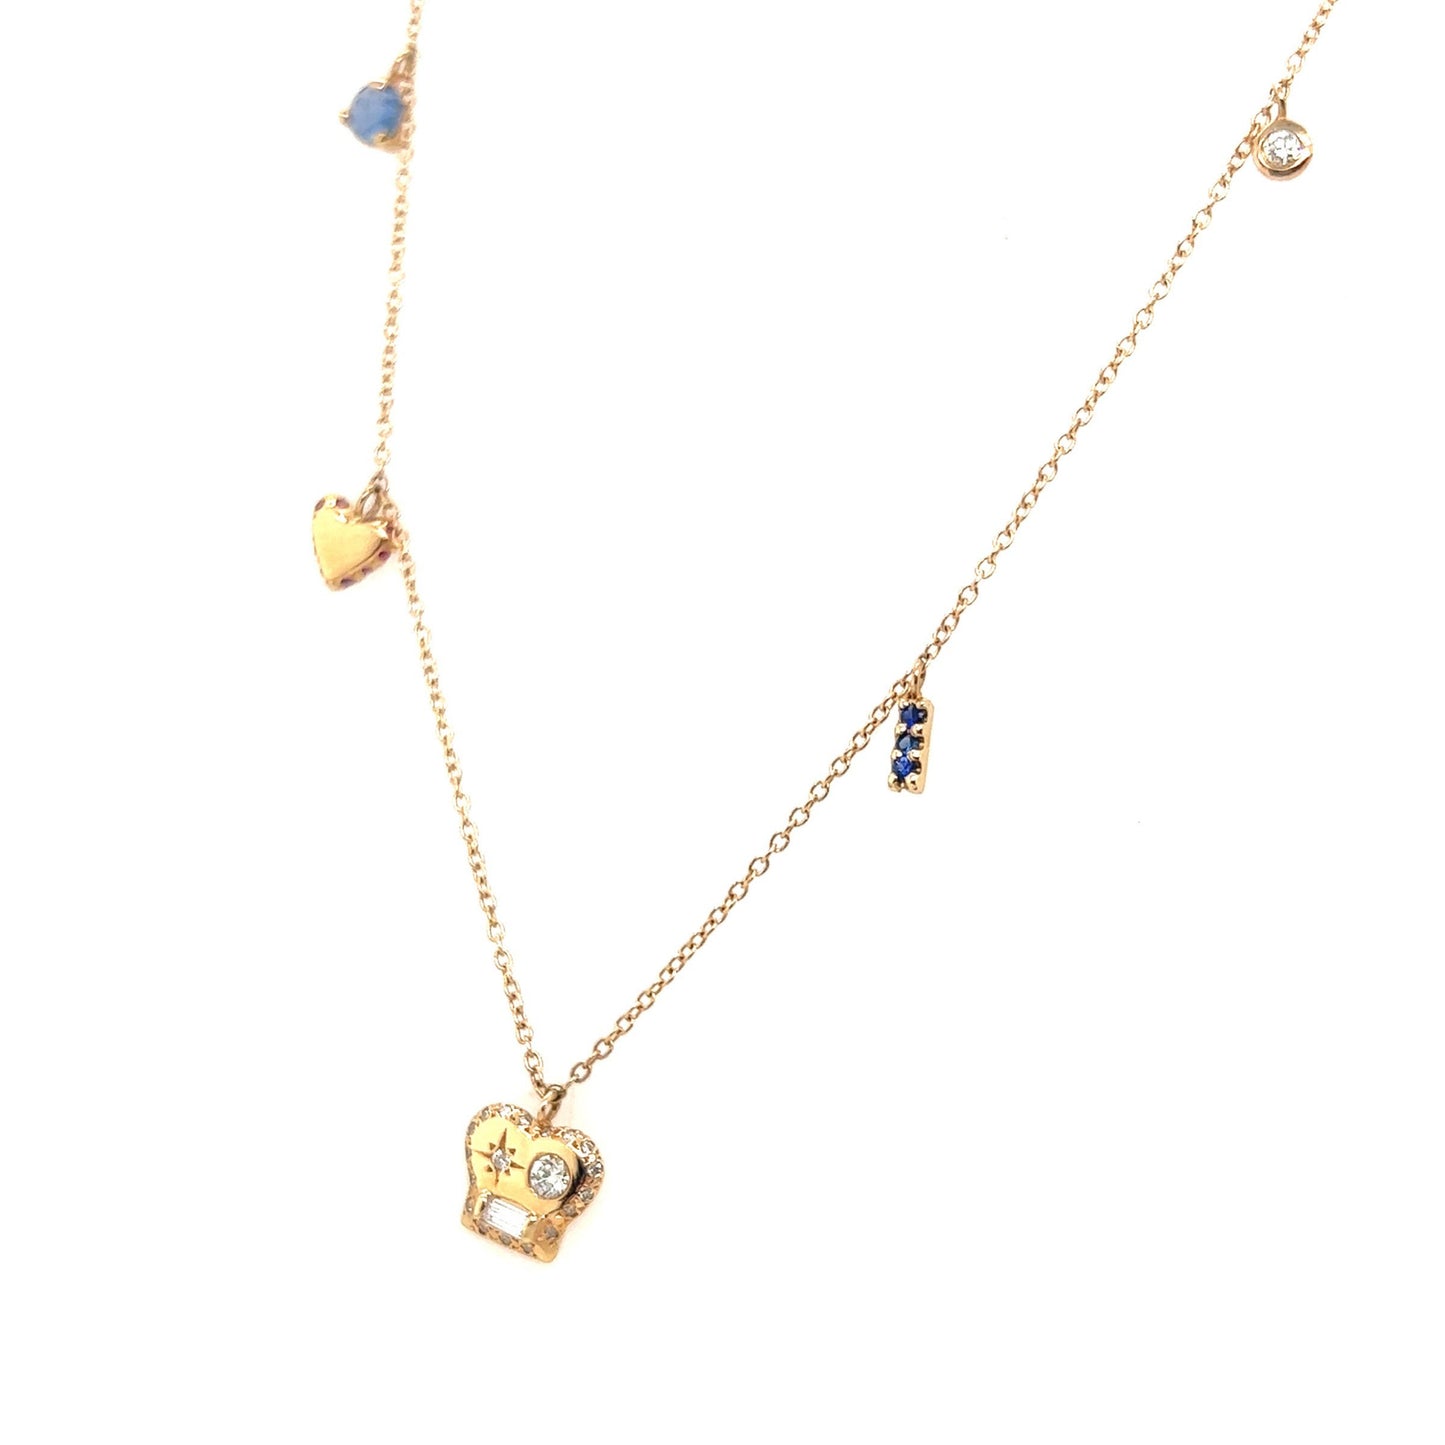 Scosha 14kt Yellow Gold Brian Mixed Diamond Charm Necklace